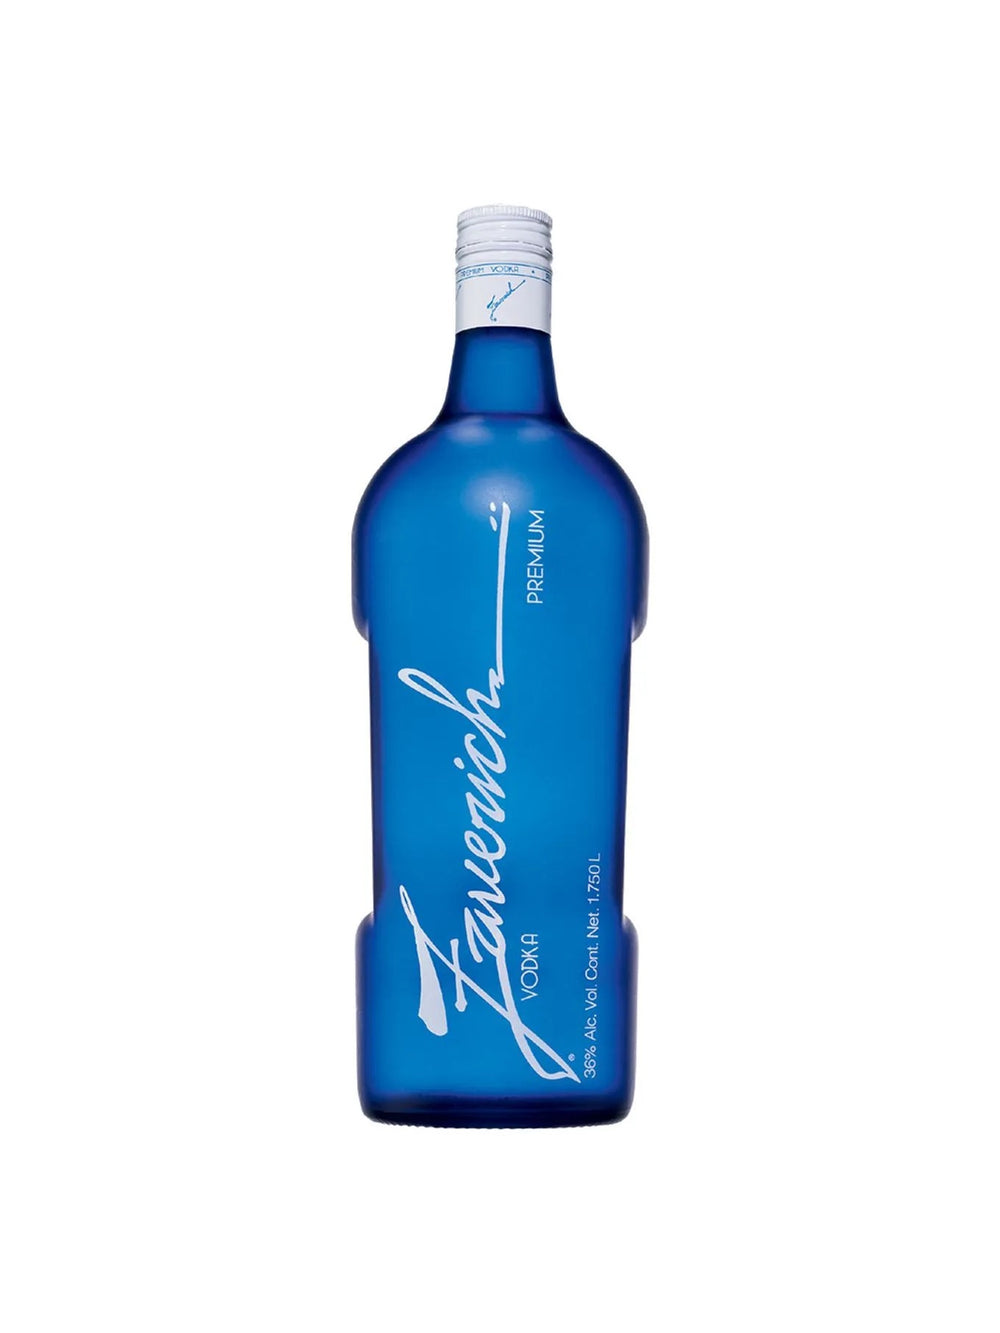 Vodka Zaverich Premium - 1.75 L